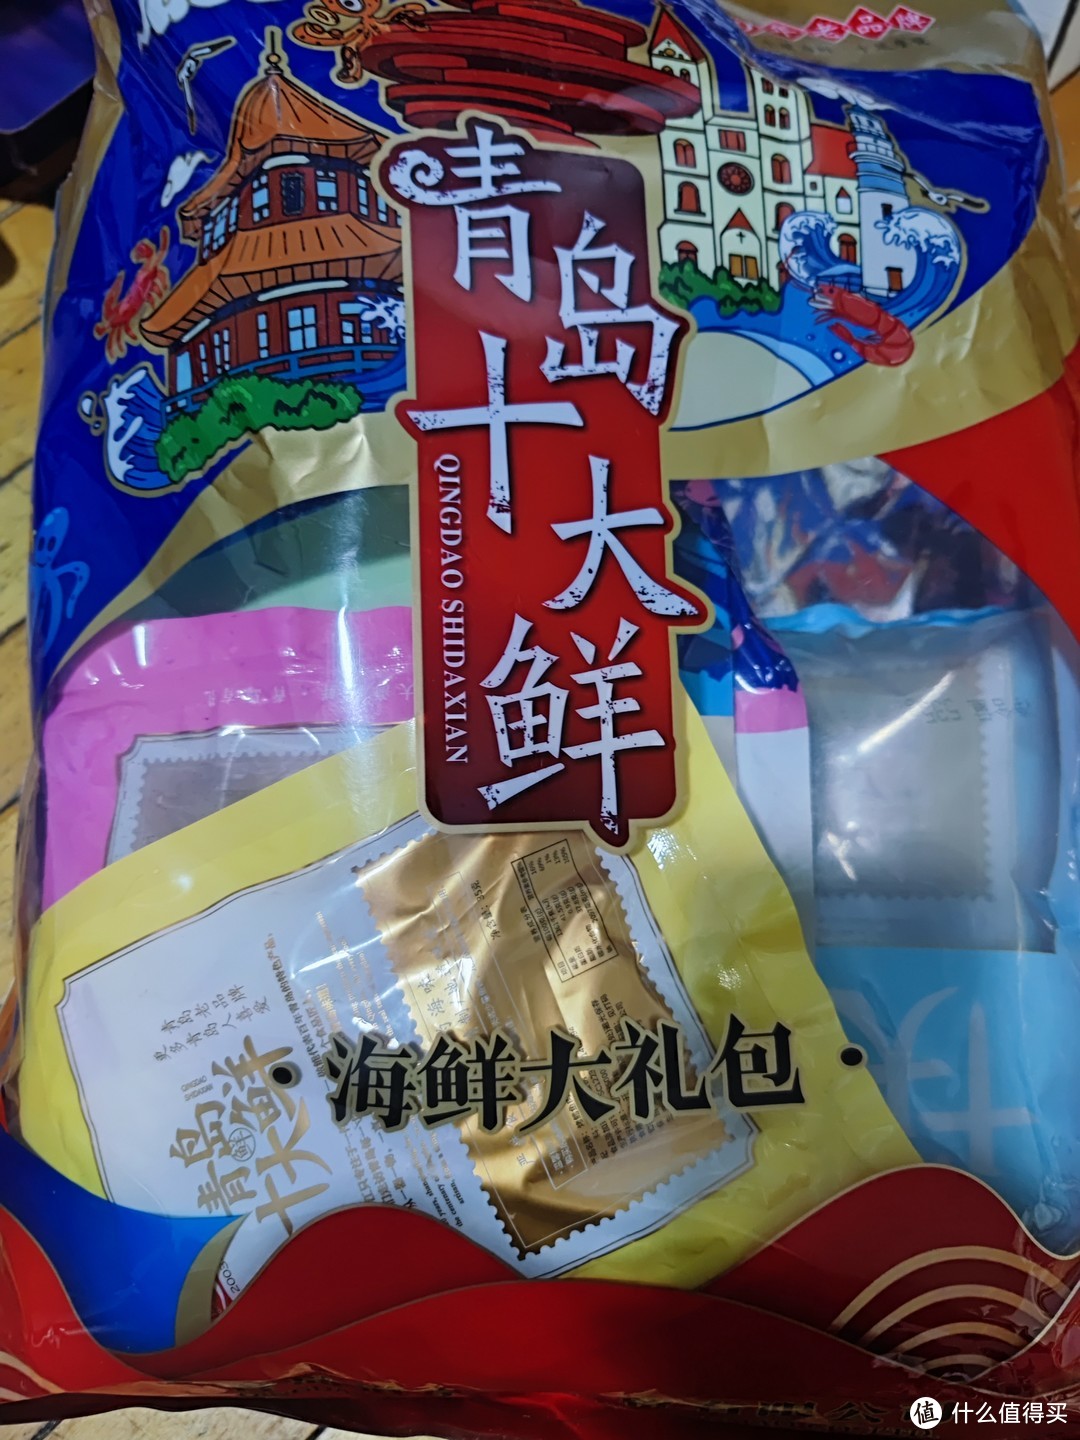 同学从青岛回来送给我的海鲜大礼包。